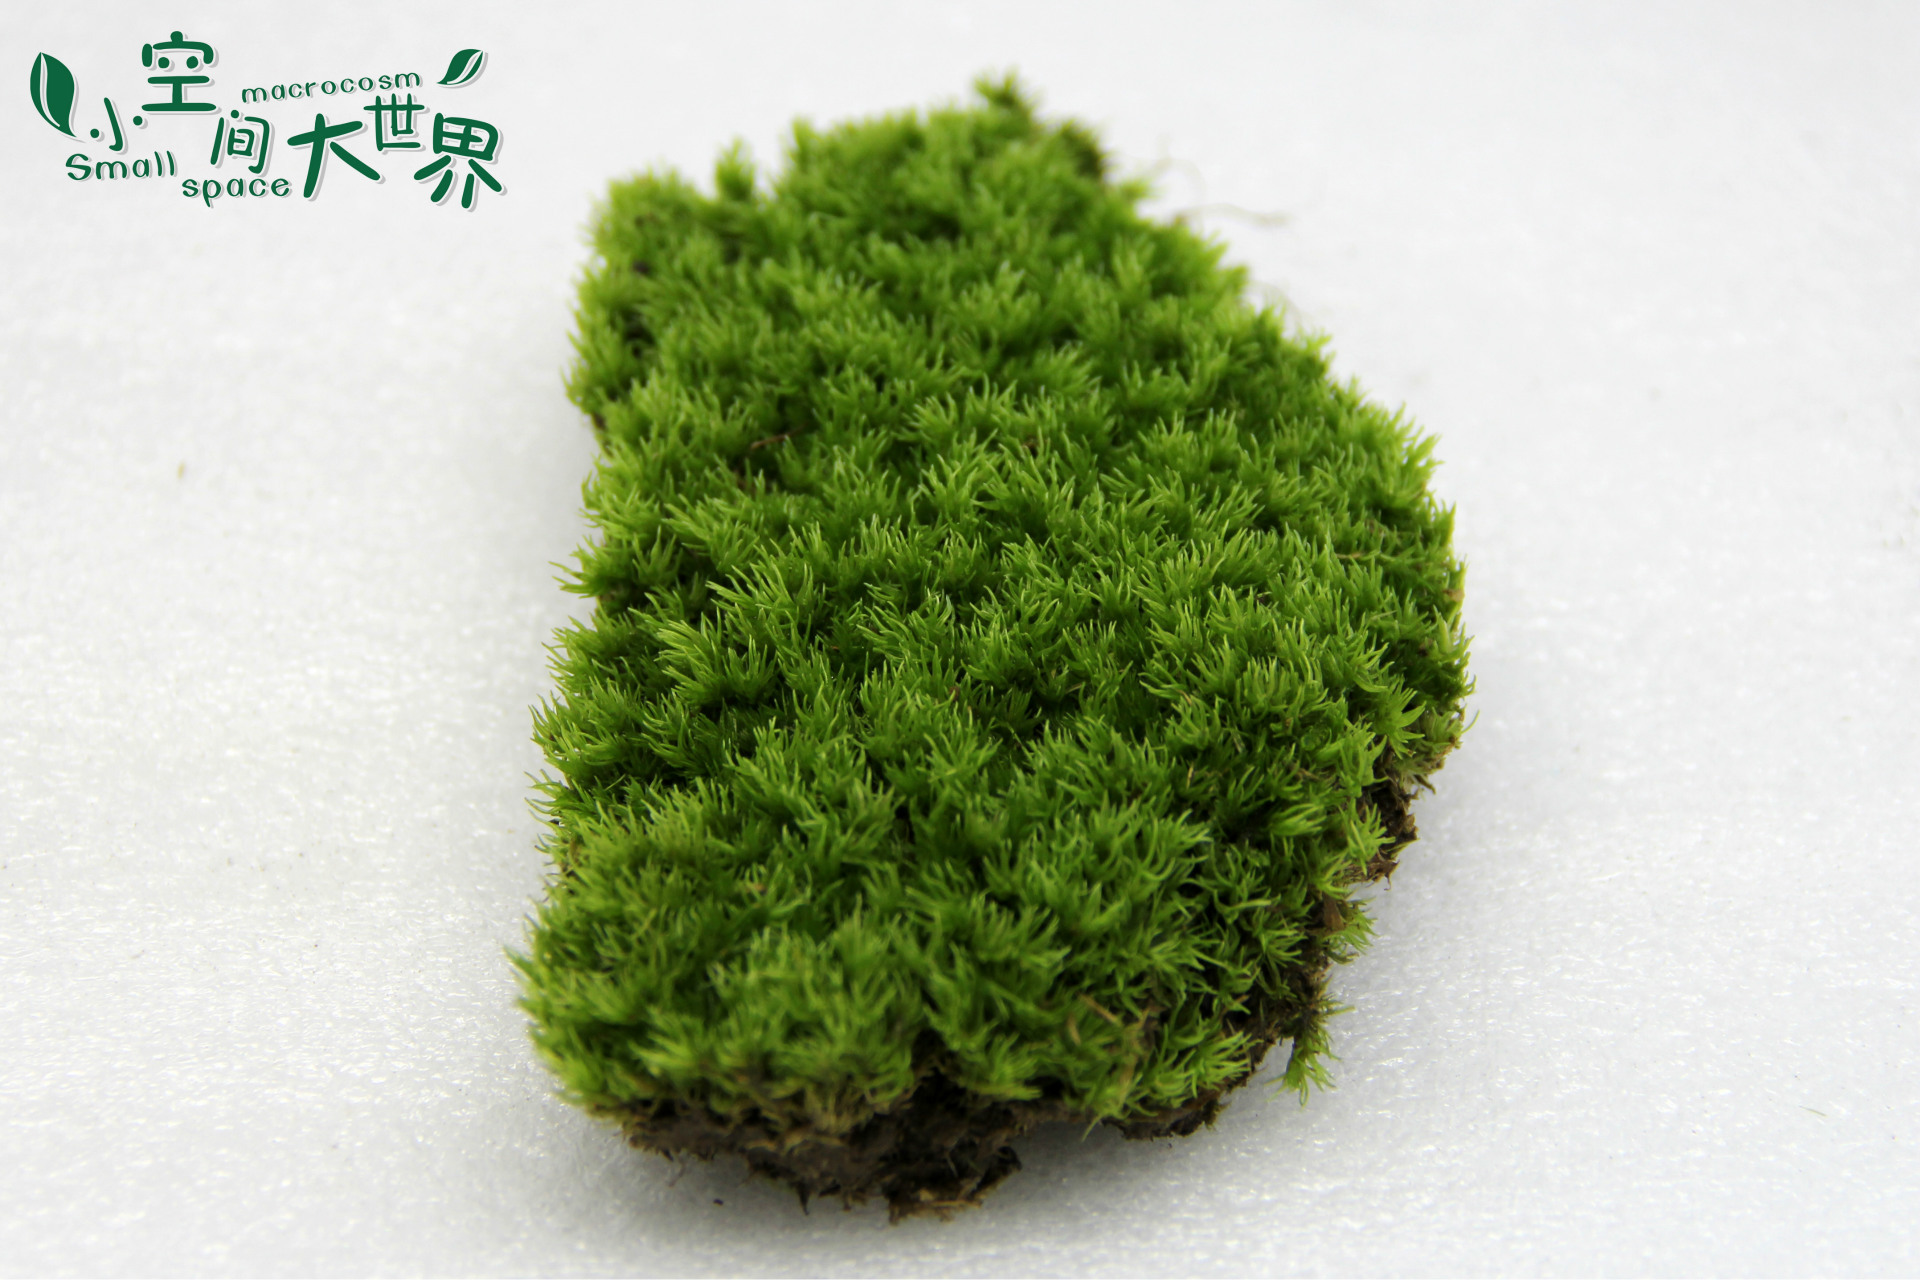 微景观生态瓶专用 微景观苔藓 小白发苔藓 白发藓 13*10cm 活苔藓